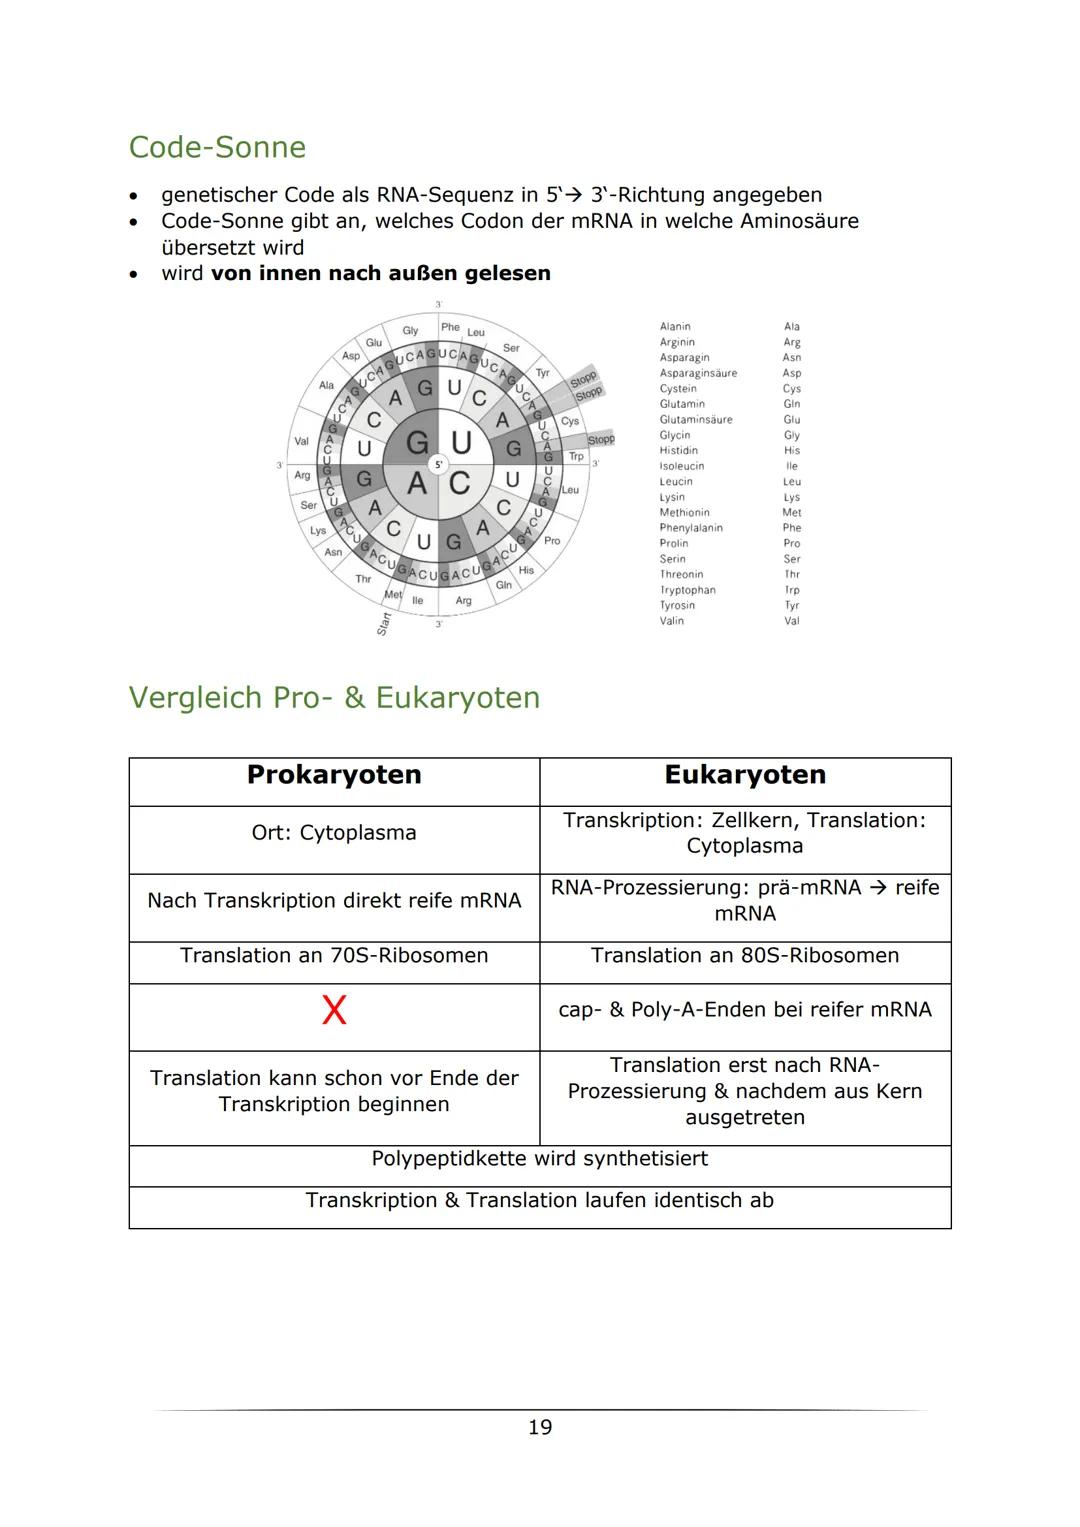 C
B. Biologie
MOTOTUTIONON
LK Abiturlernzettel 2022
von Sarah Gerber Inhaltsverzeichnis
Genetik
Vorwissen
Zellzyklus
Mitose
Meiose.....
Enzy